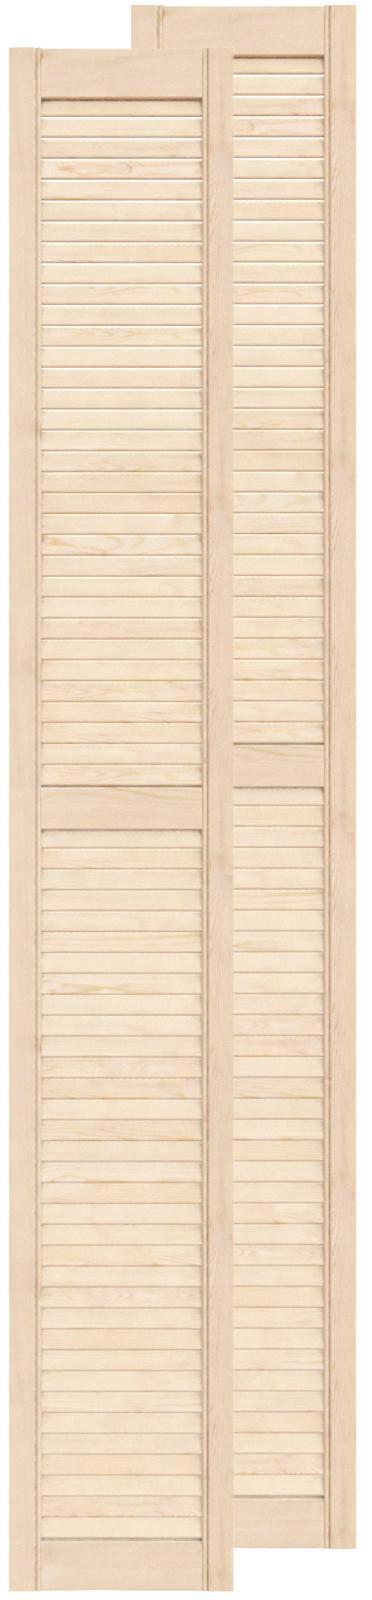 Двери жалюзийные деревянные Timber&Style 2013х294х20мм сосна Экстра .